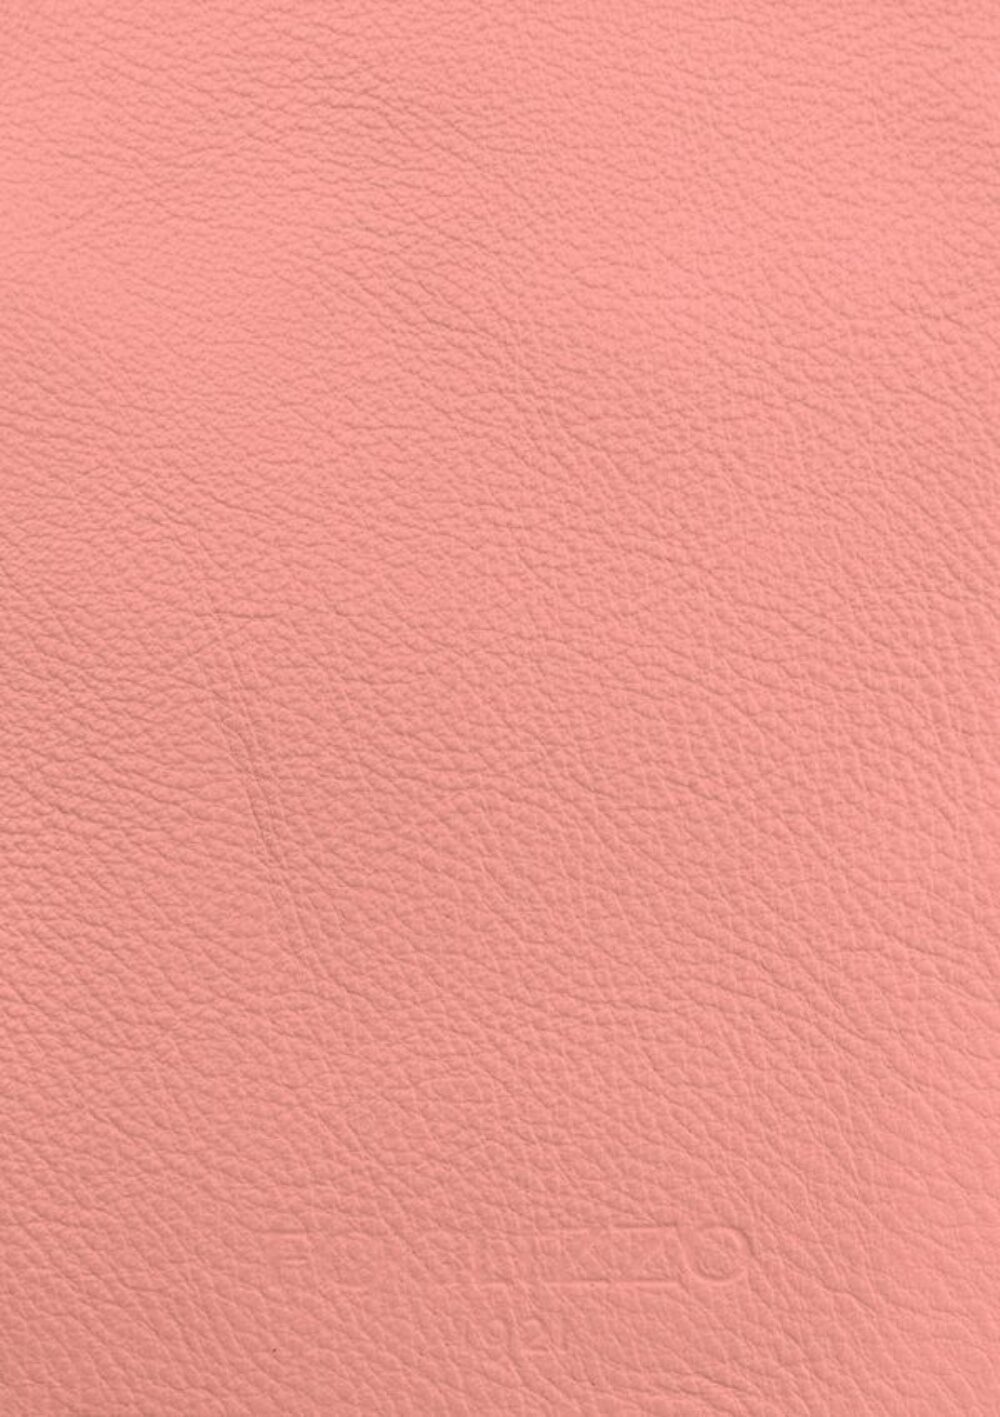 Diseño de lujo y alfombras de alta gama hechas a medida • Pink Lemonade Jade